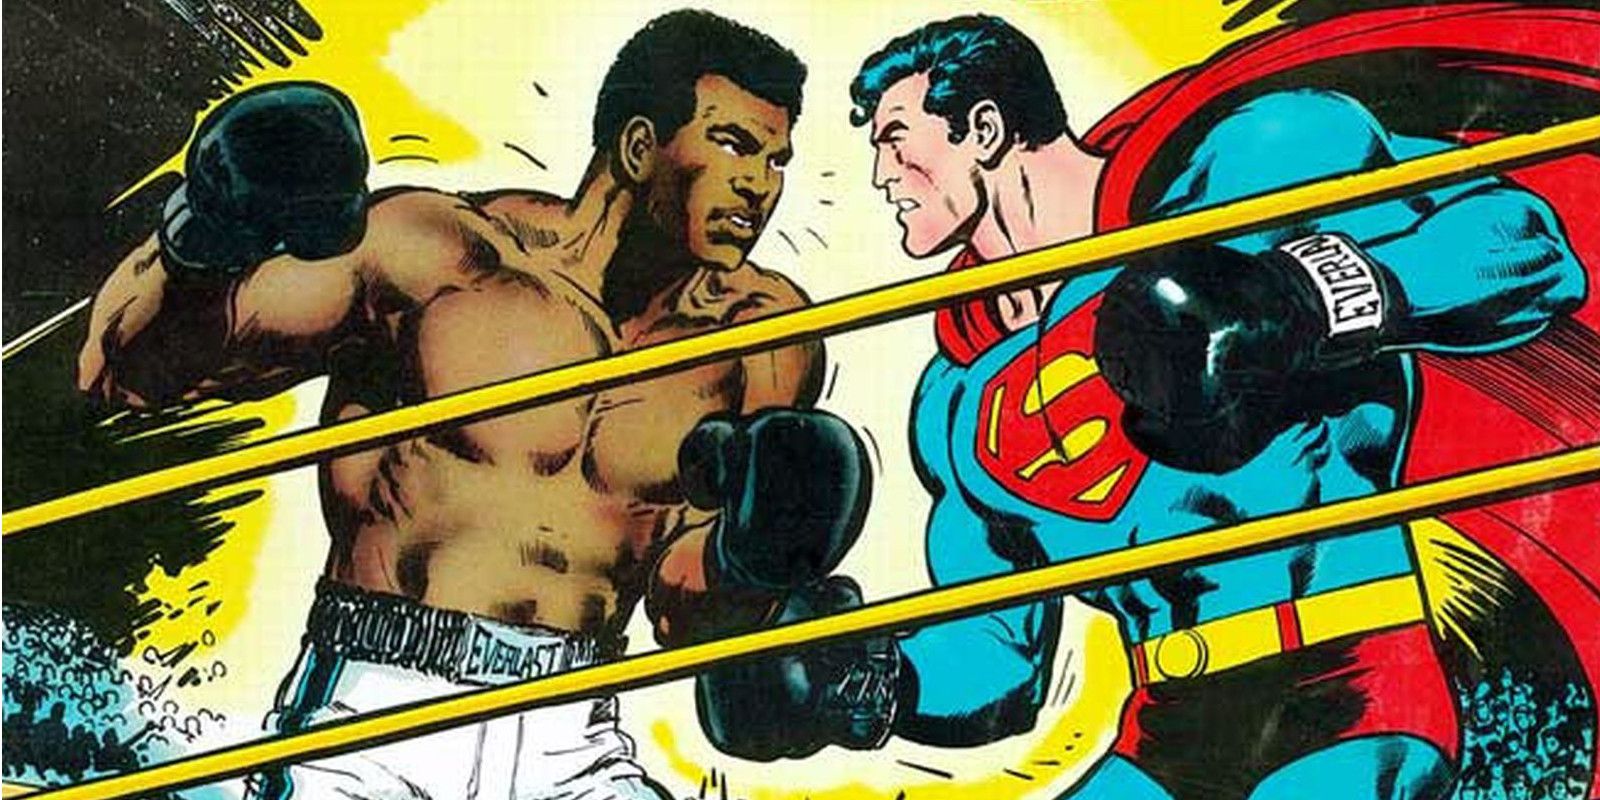 Muhammad Ali Superman vs Muhammad Ali cover